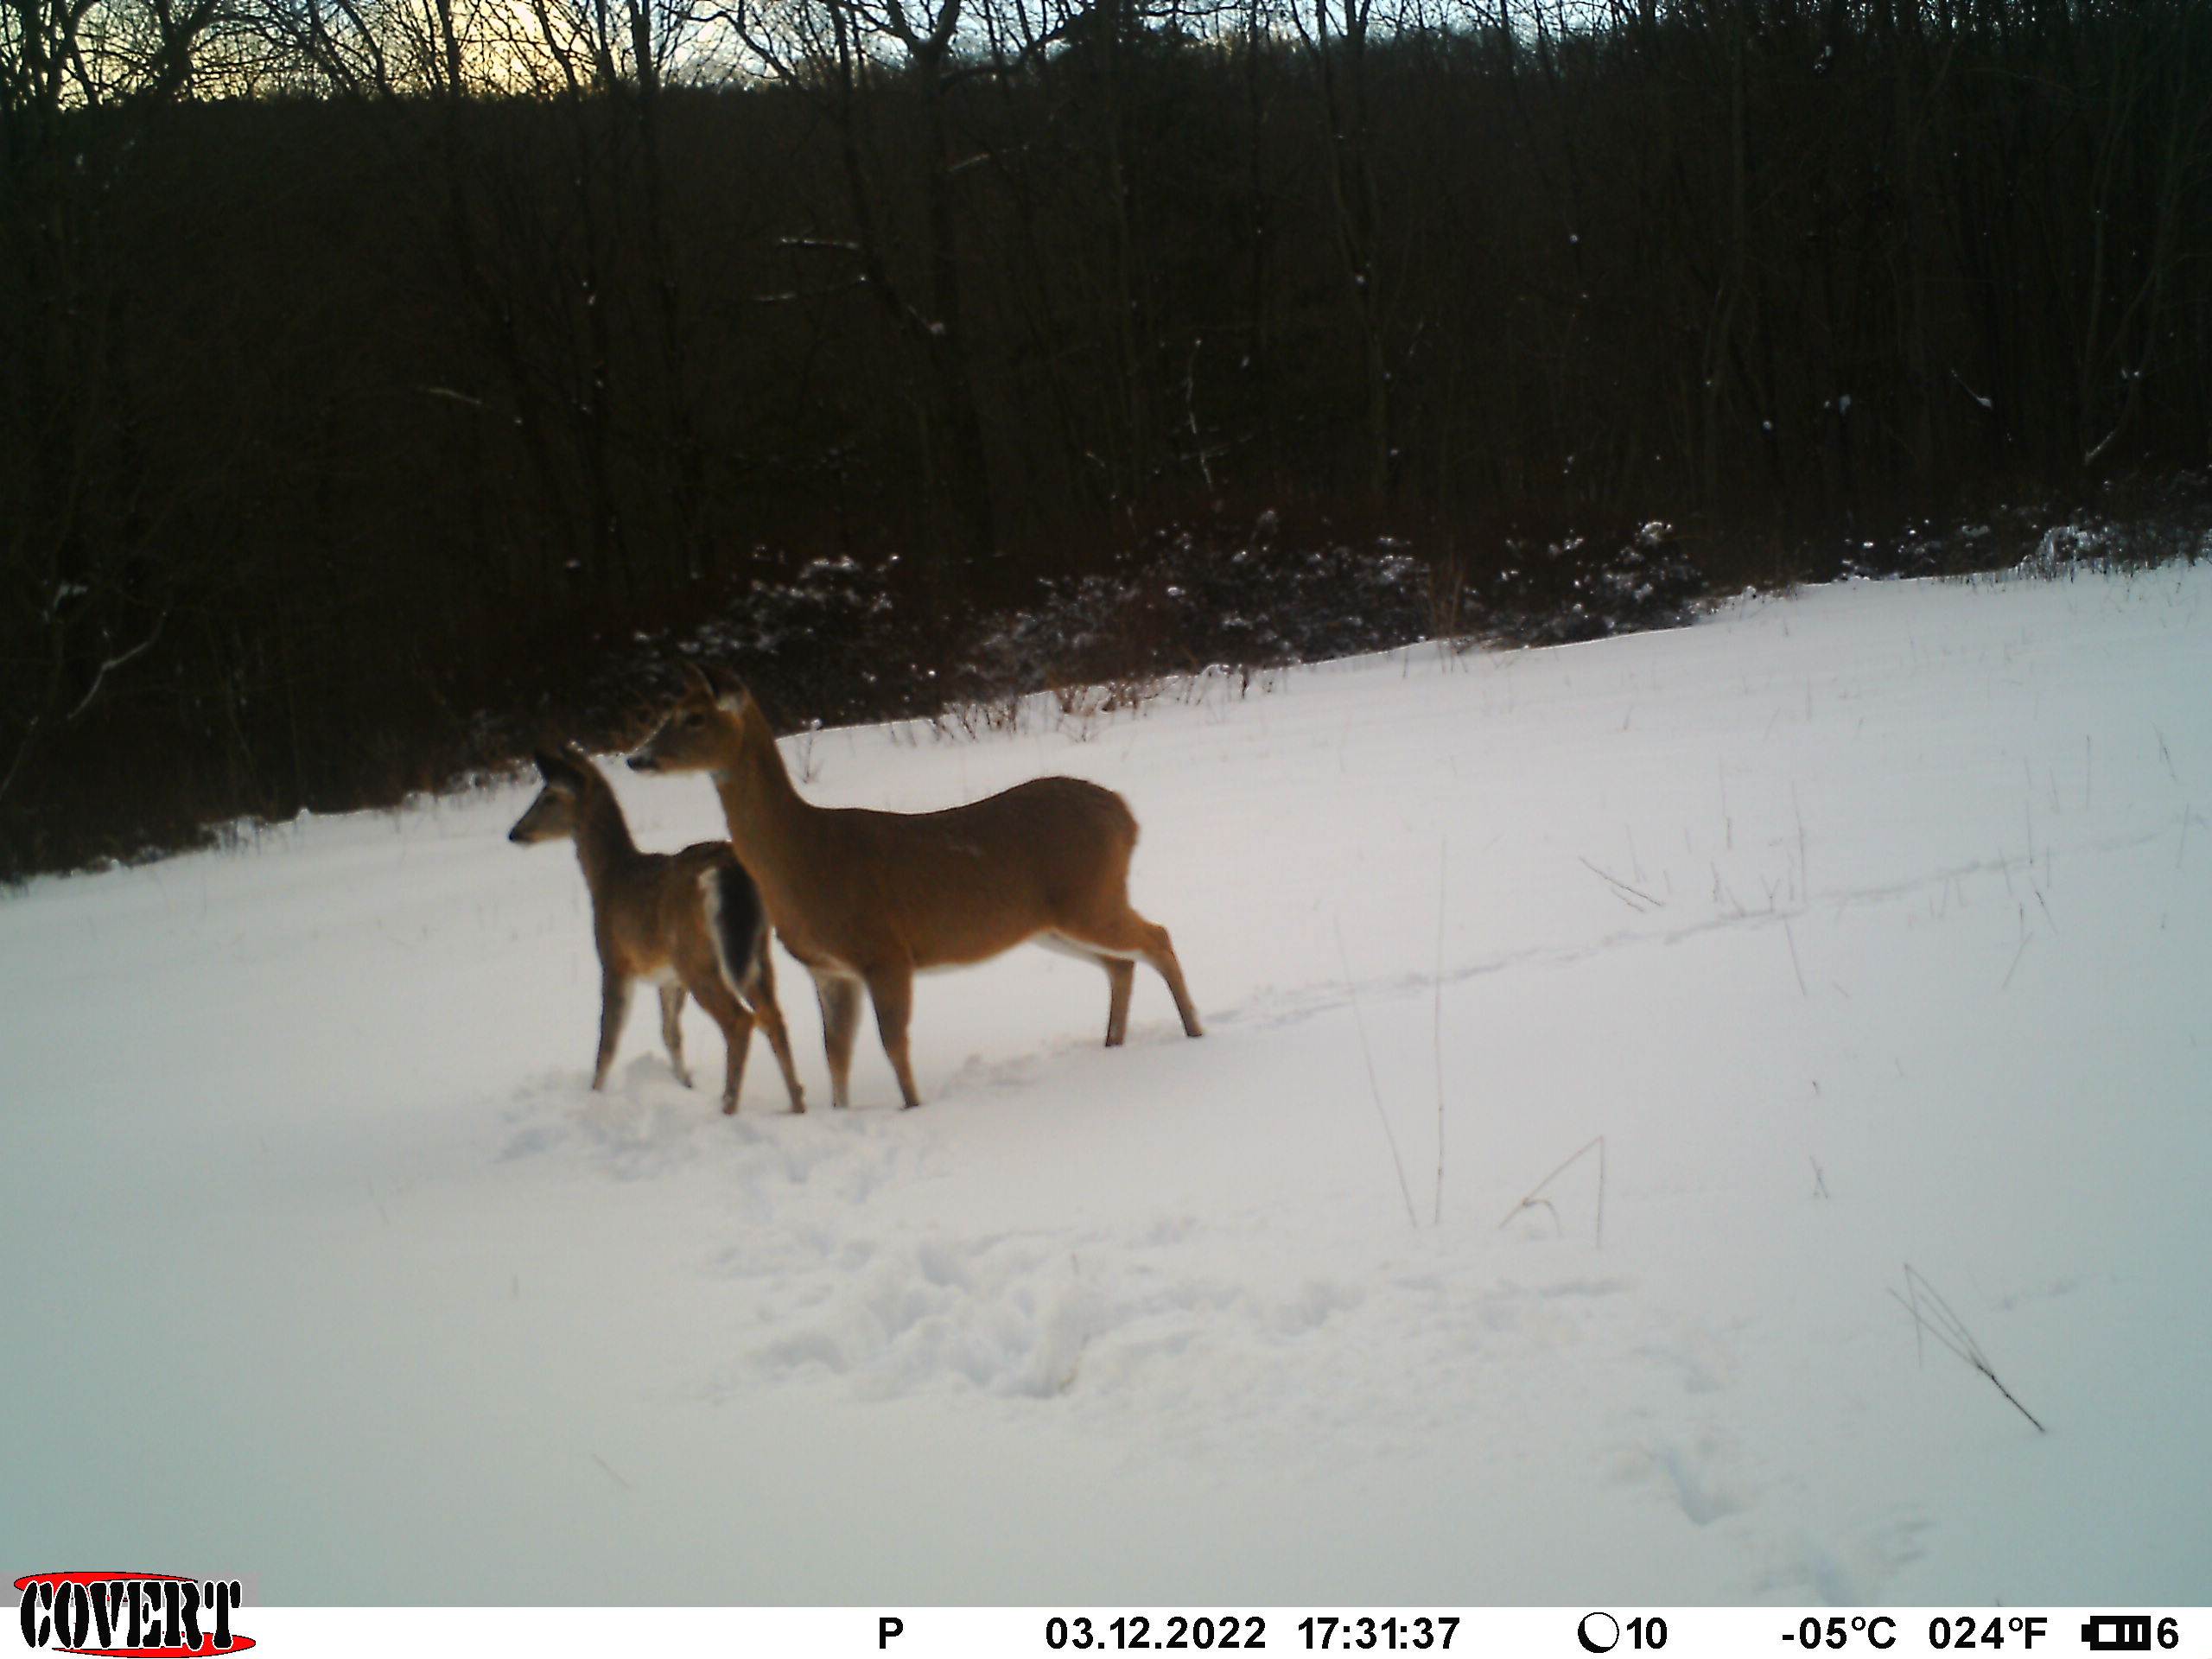 Deer on trail cameras in snow